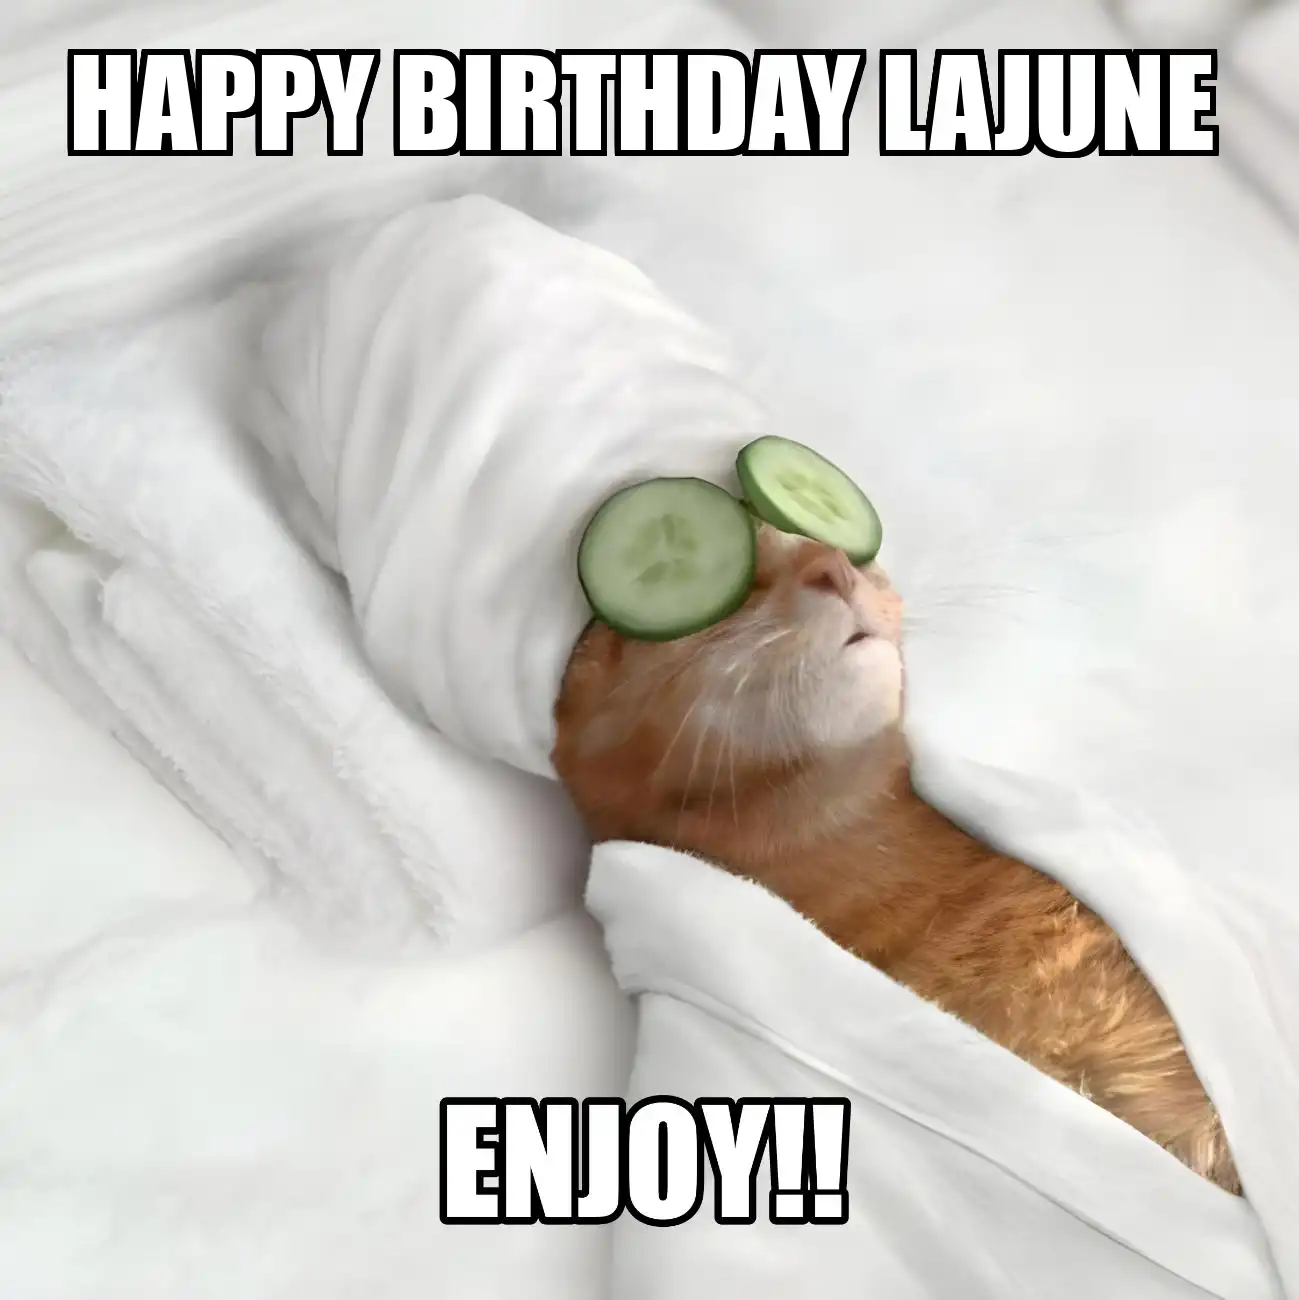 Happy Birthday Lajune Enjoy Cat Meme